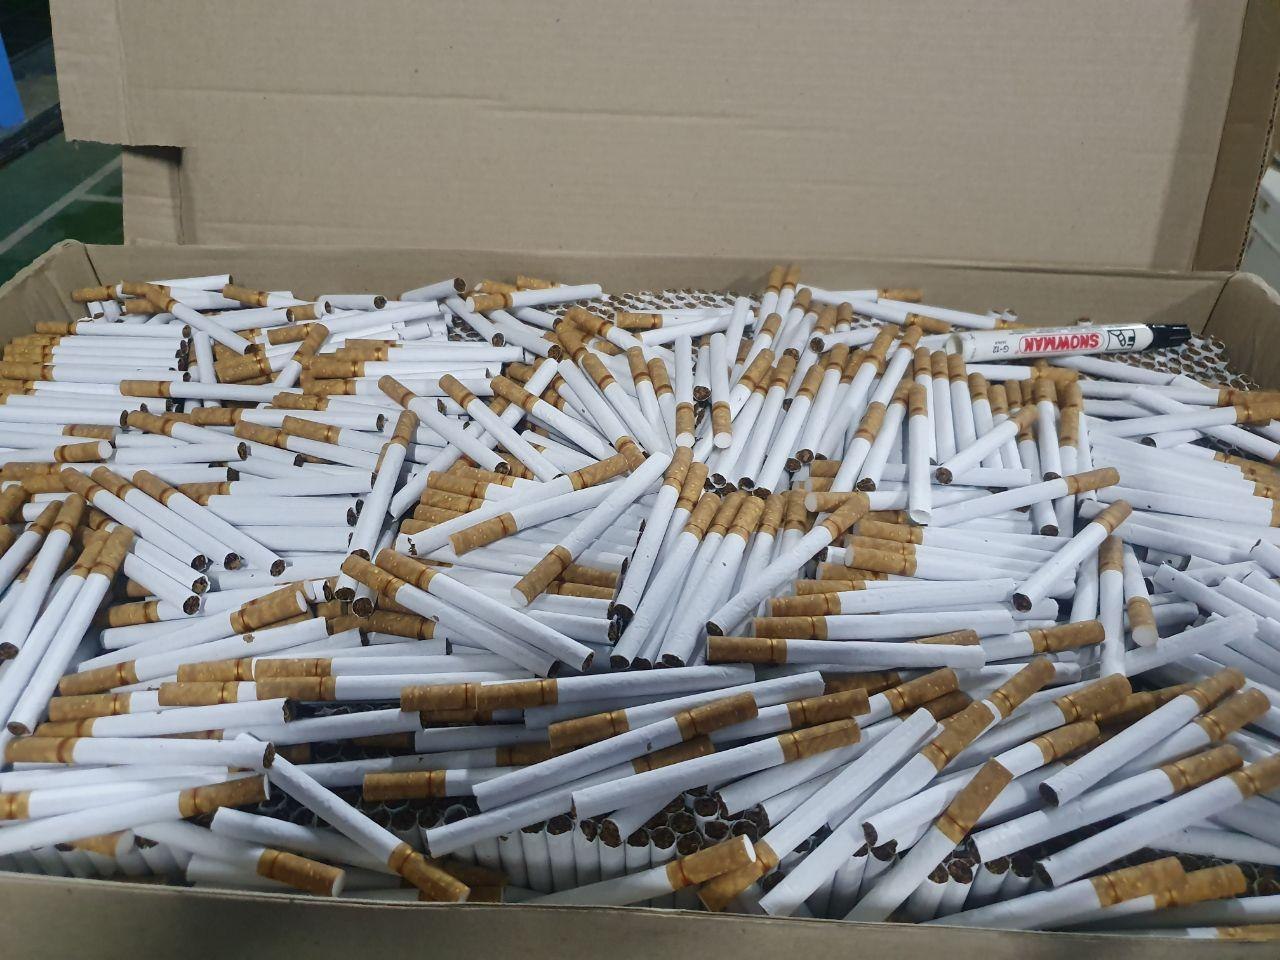 Ratusan batang rokok ilegal yang disita oleh Bea Cukai Malang. (Foto: Istimewa)